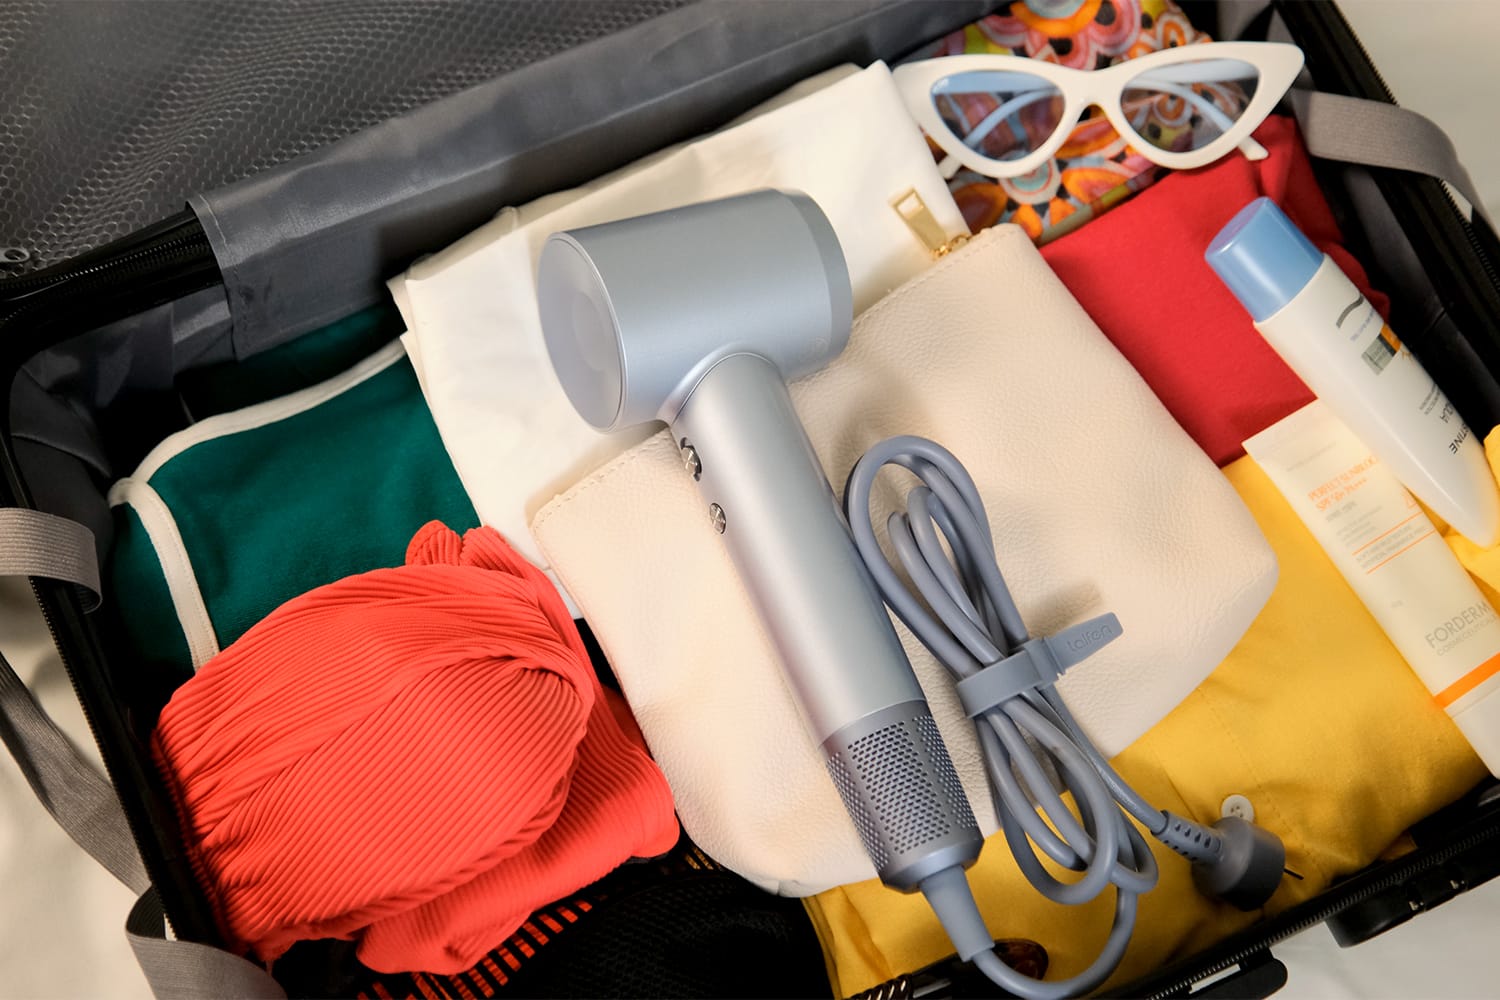 Laifen Swift Hair Dryer in luggage